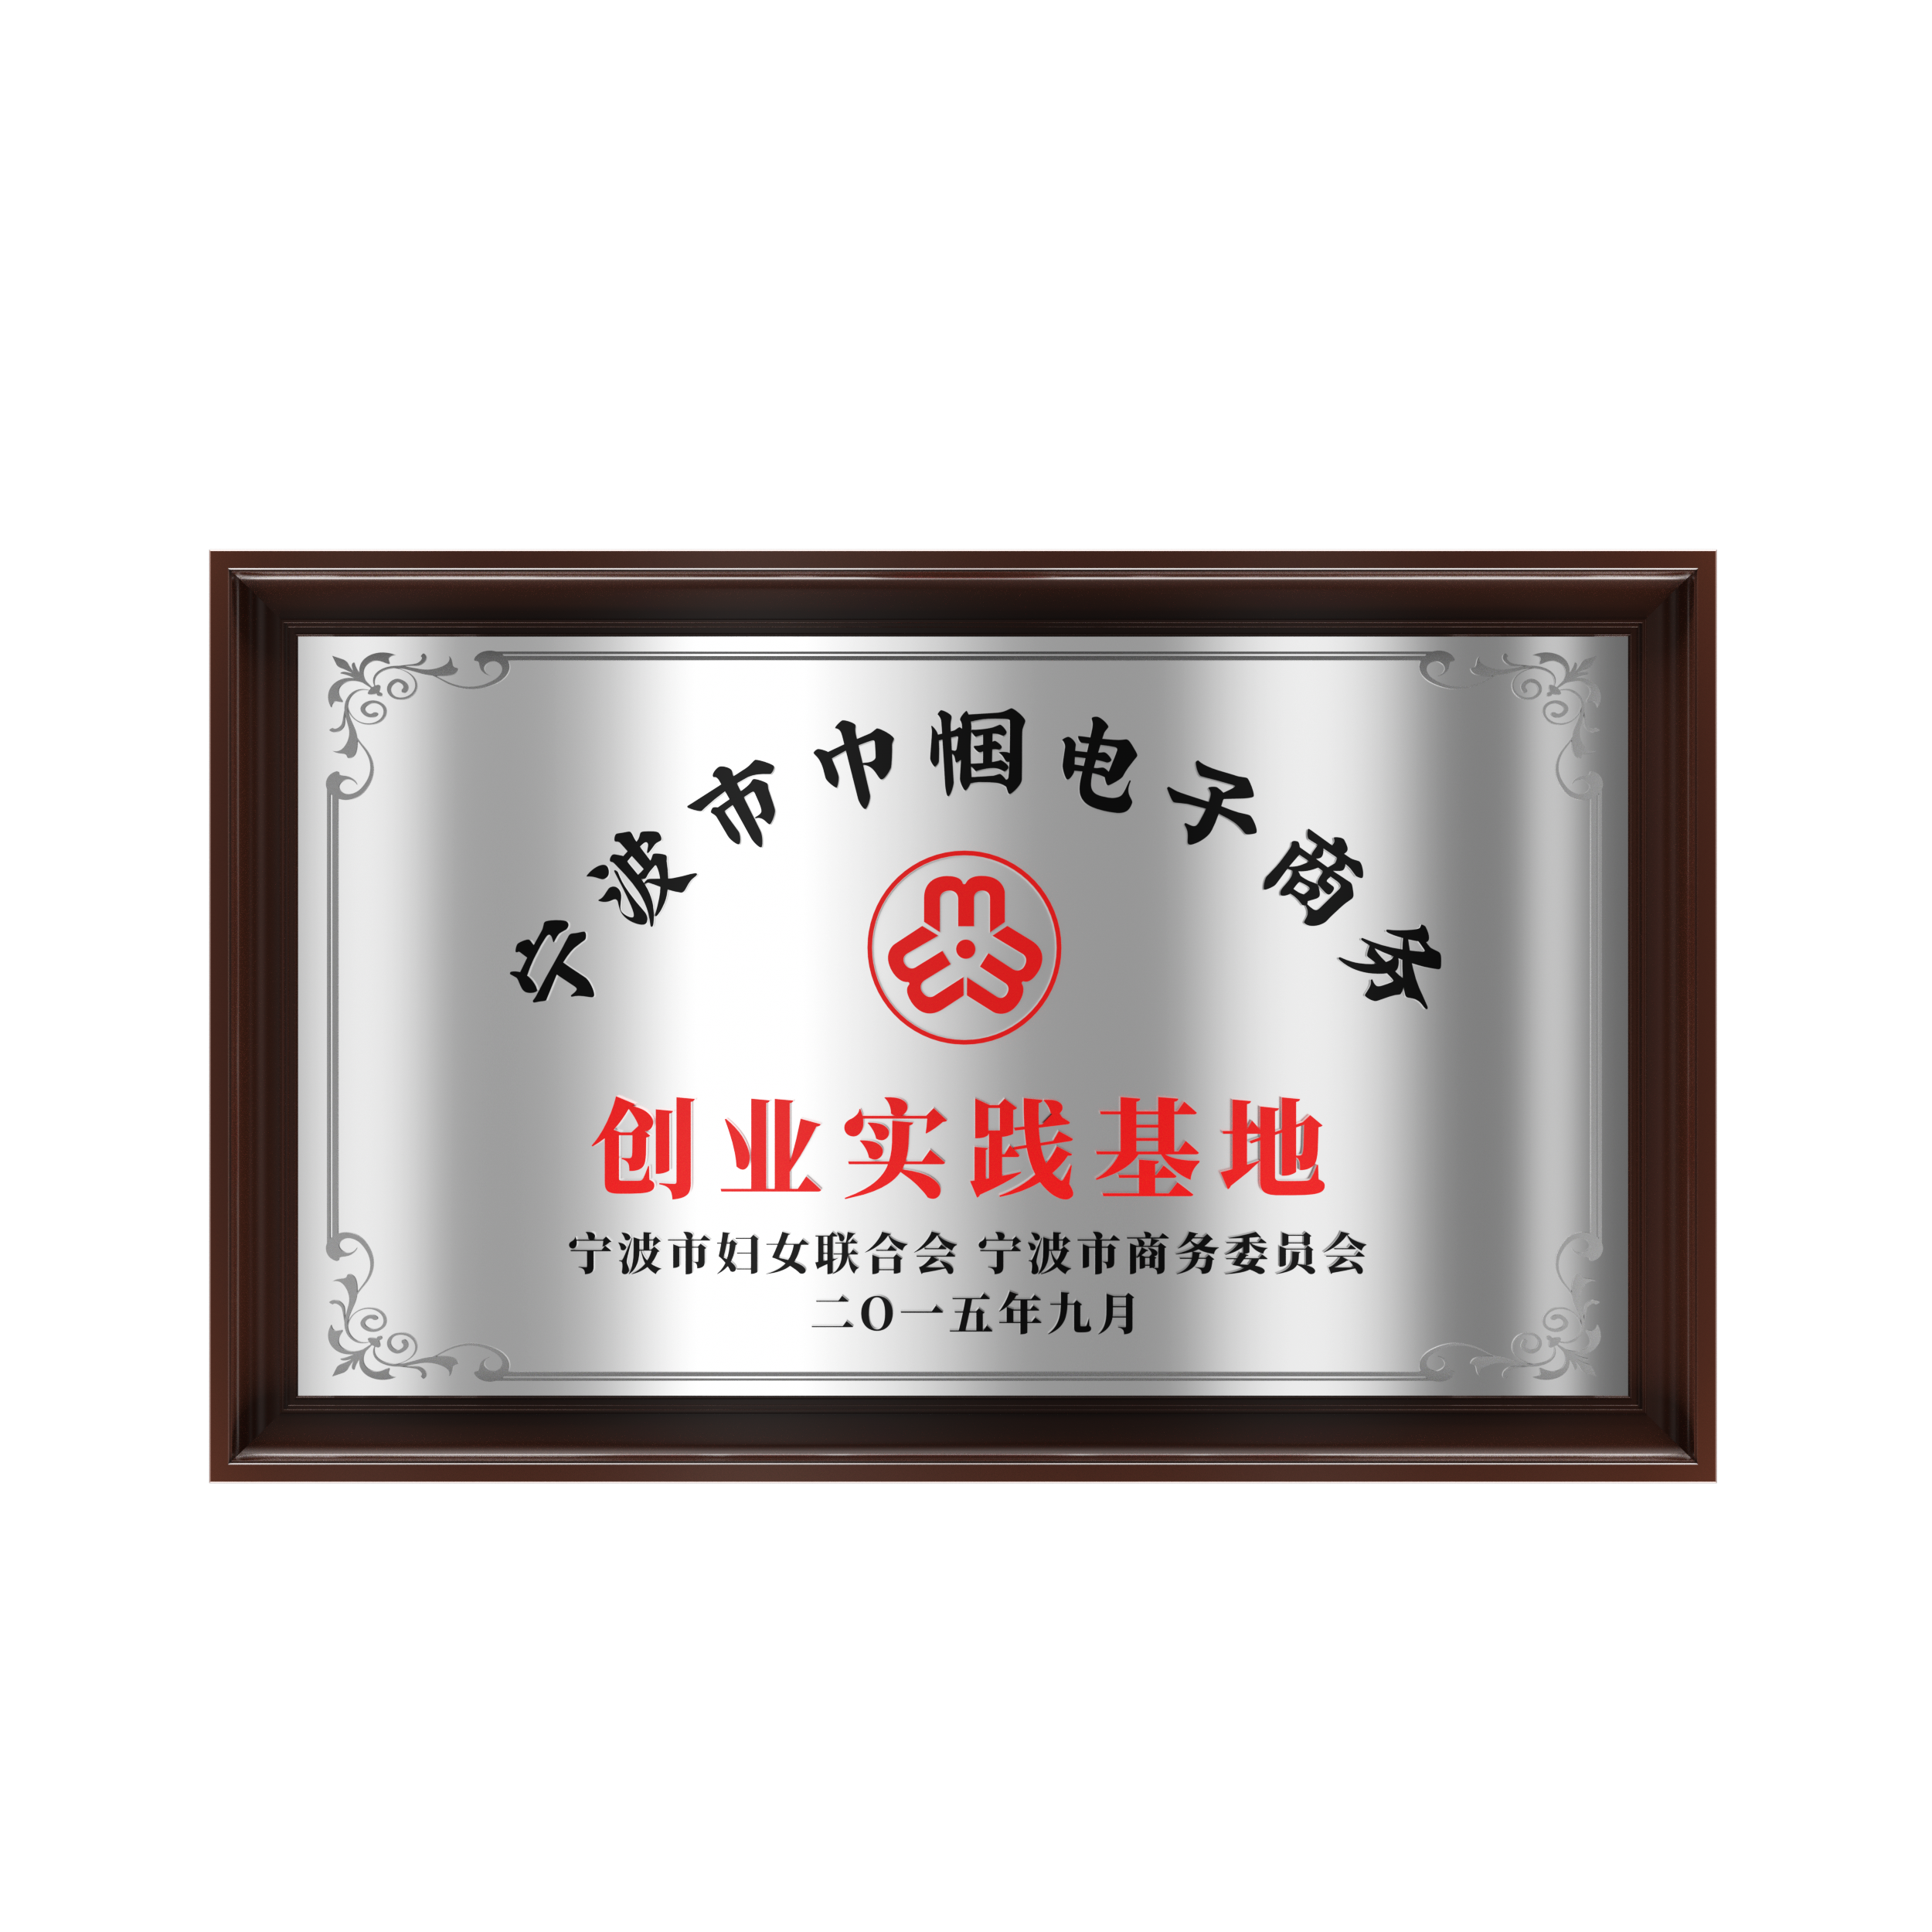 2015年 宁波市巾帼电子商务创业实践基地